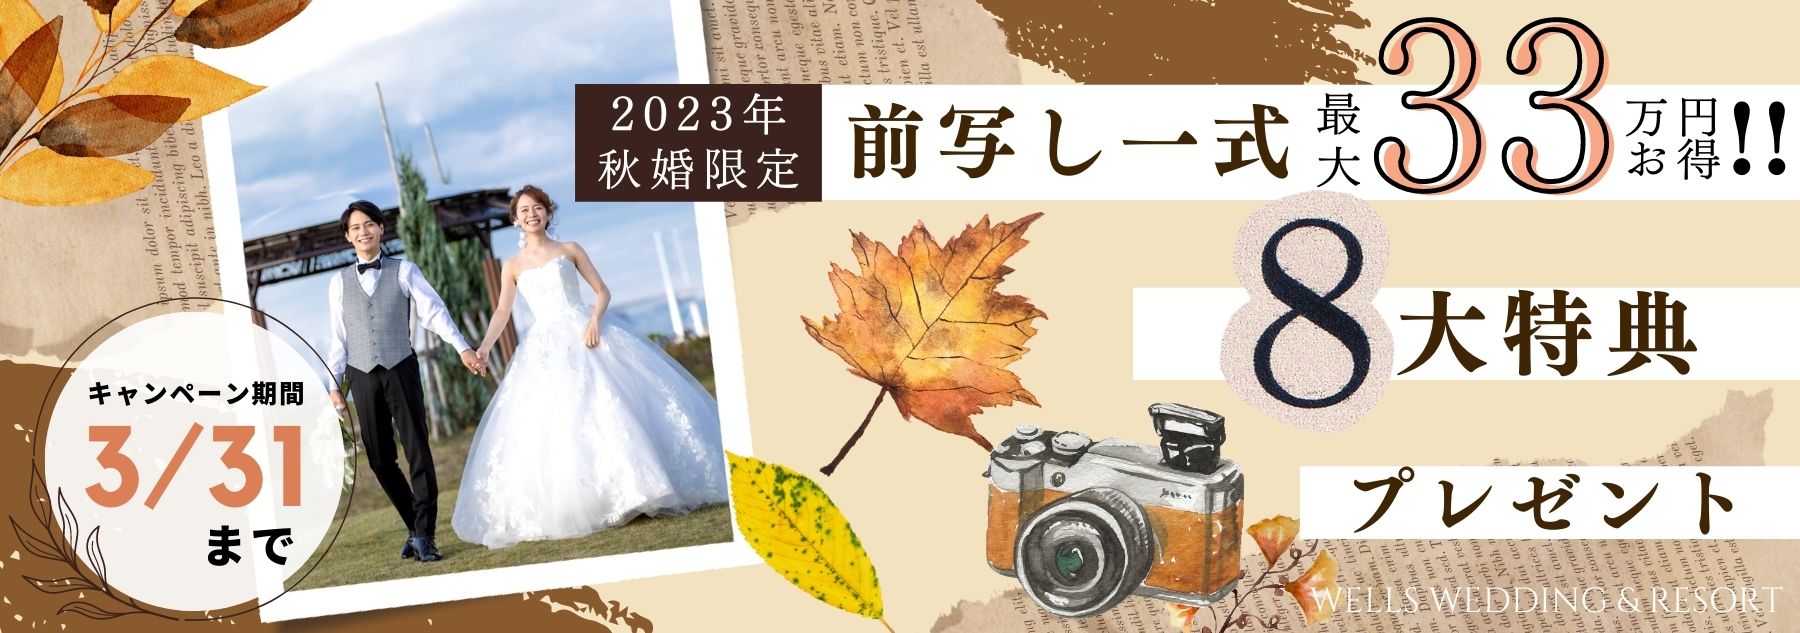 徳島県で人気の結婚式場のブランアンジュの秋婚プラン